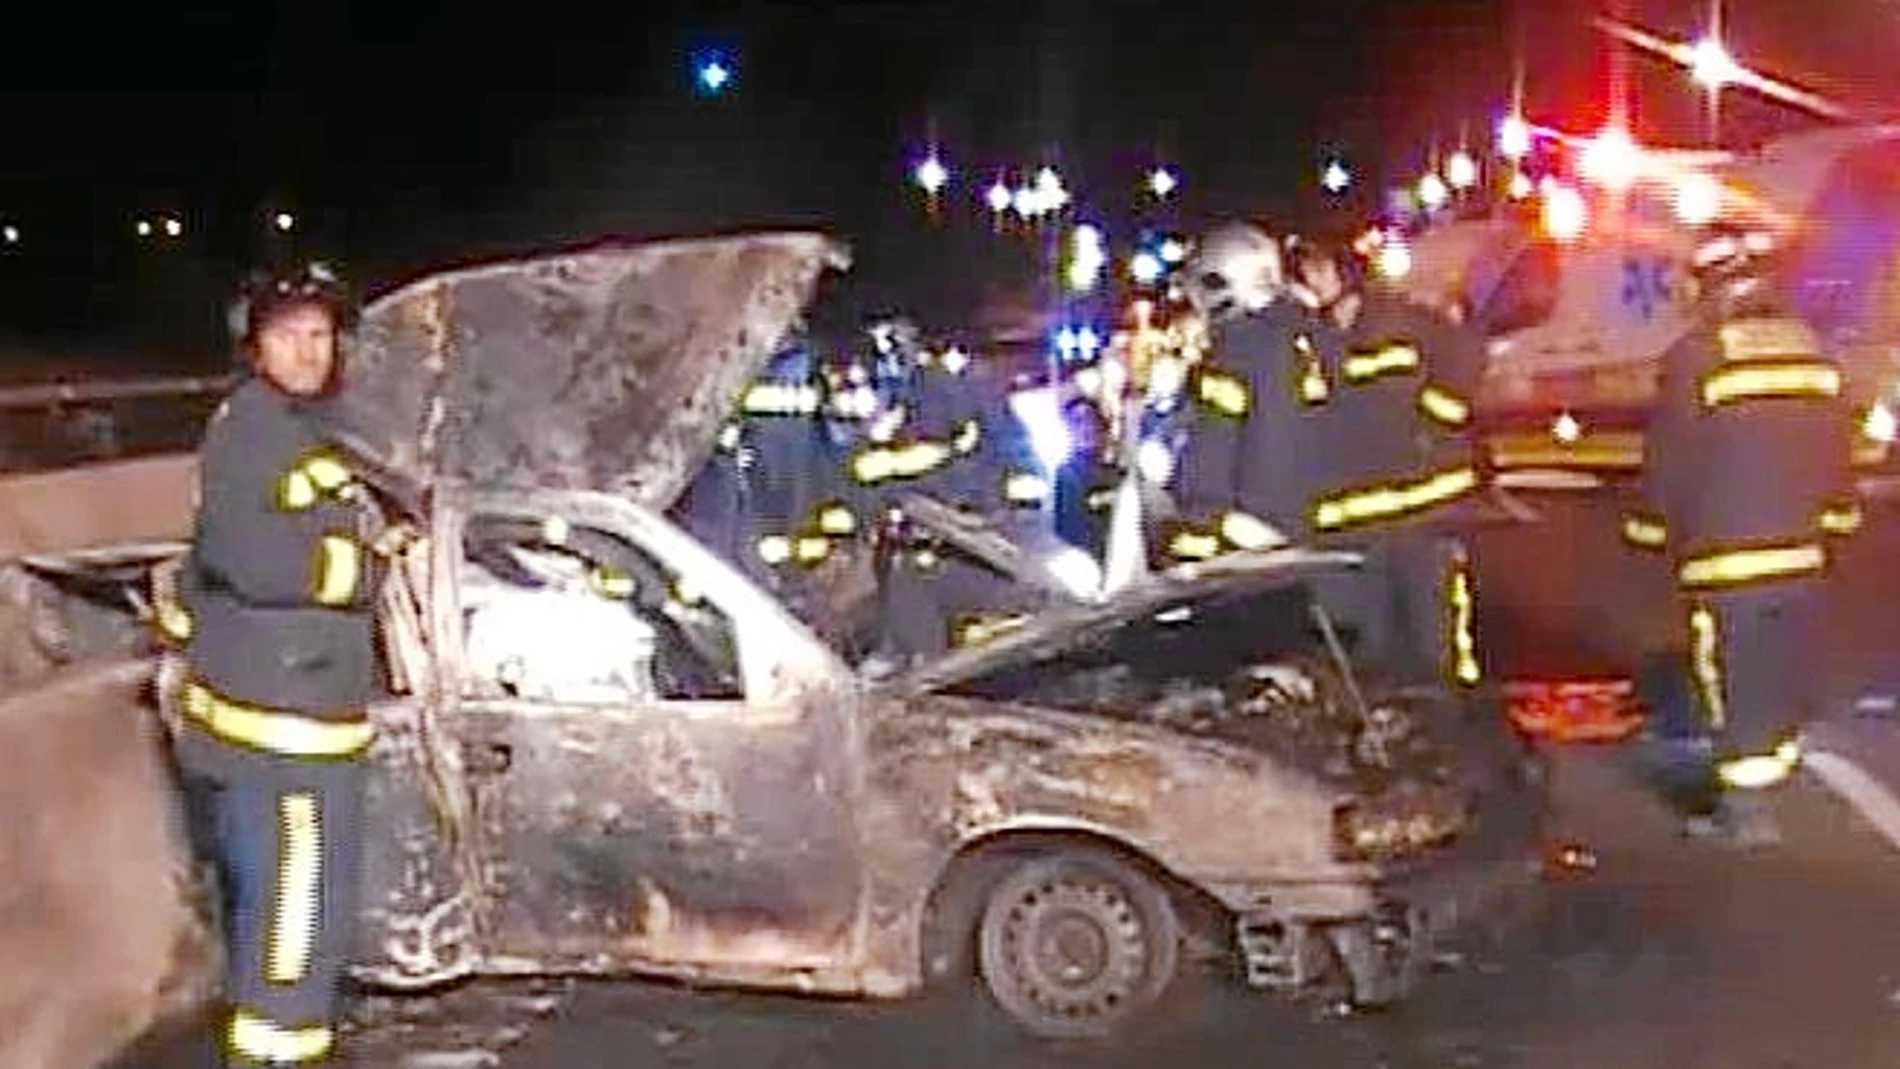 El vehículo embestido en la M-40 golpeó la mediana y se incendió debido al impacto. Los ocupantes lograron salir gracias al auxilio de otros conductores